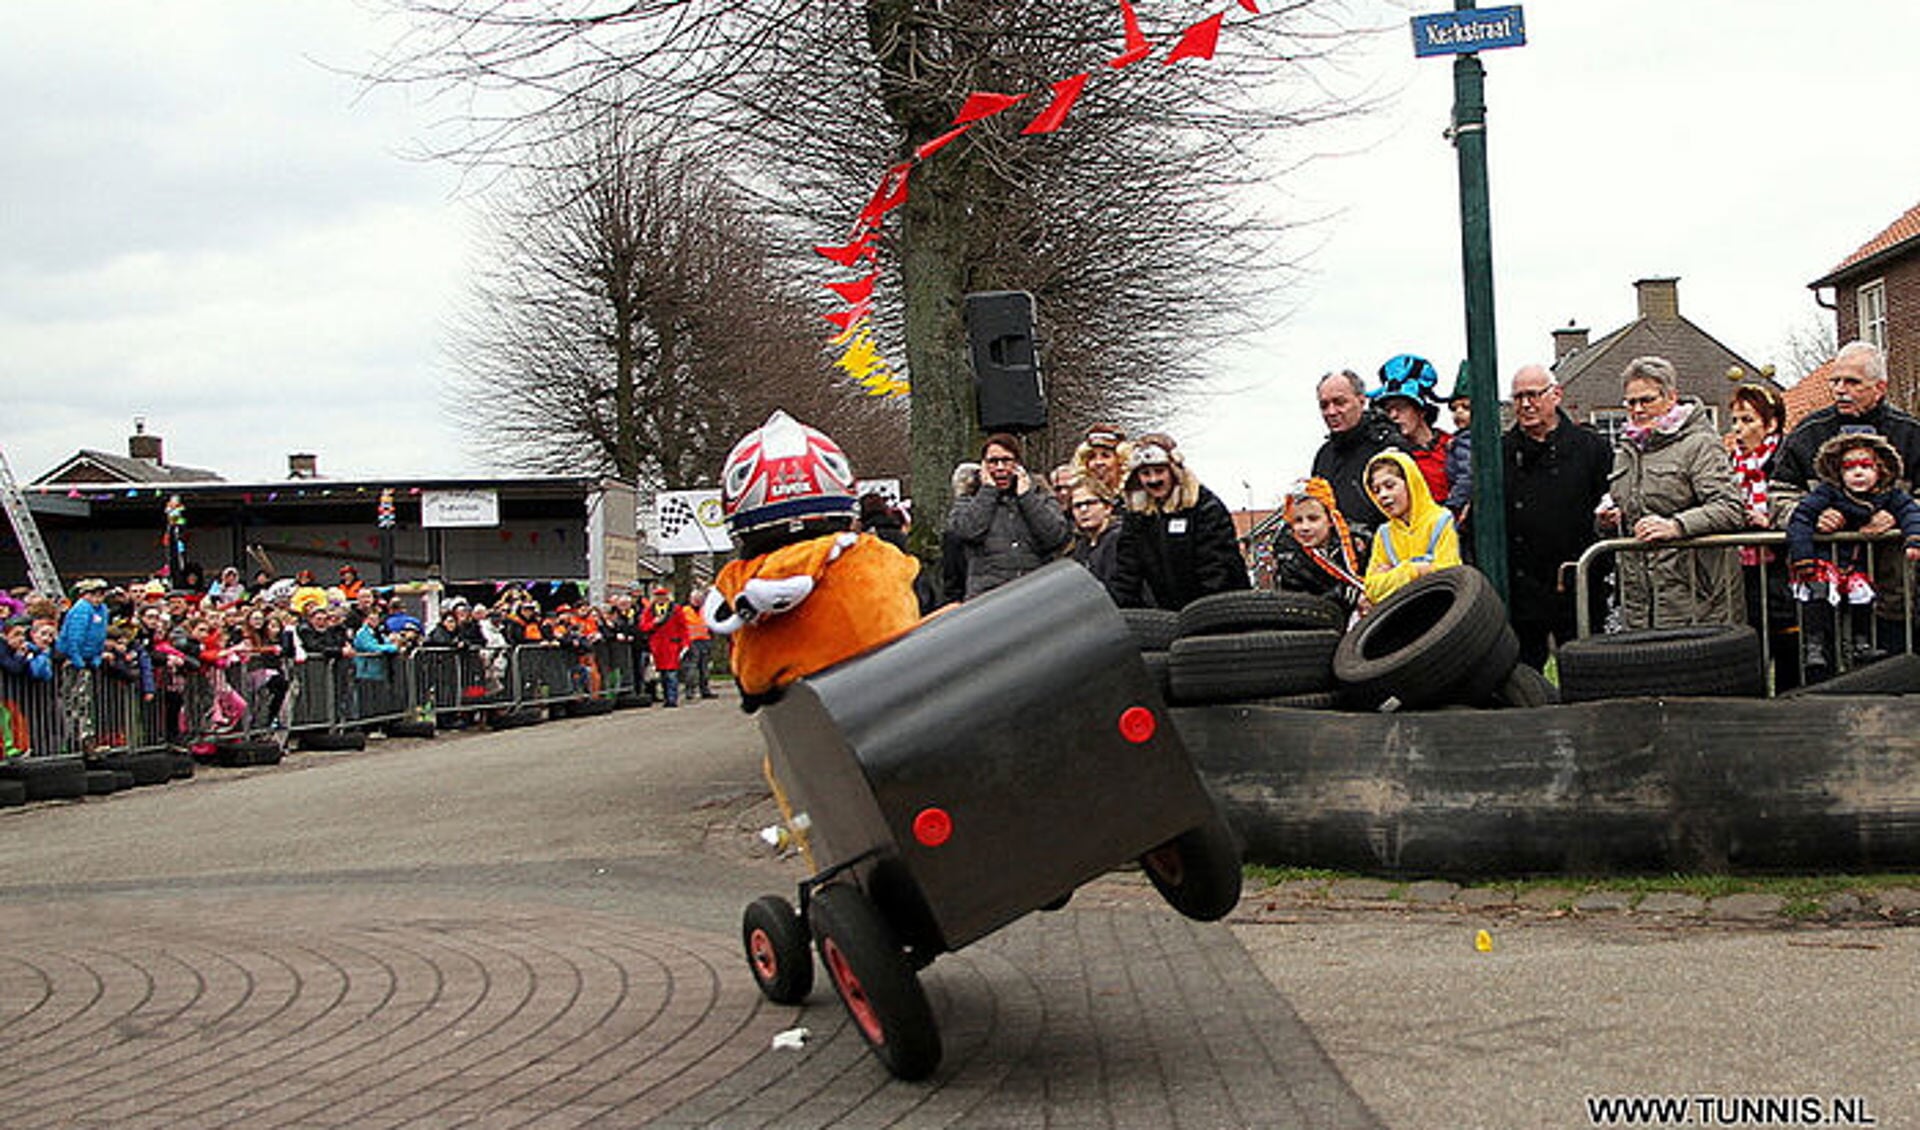 De Zeepkistenrace in Landhorst beleefde vorig jaar zijn vuurdoorp. (foto: Tunnis.nl)